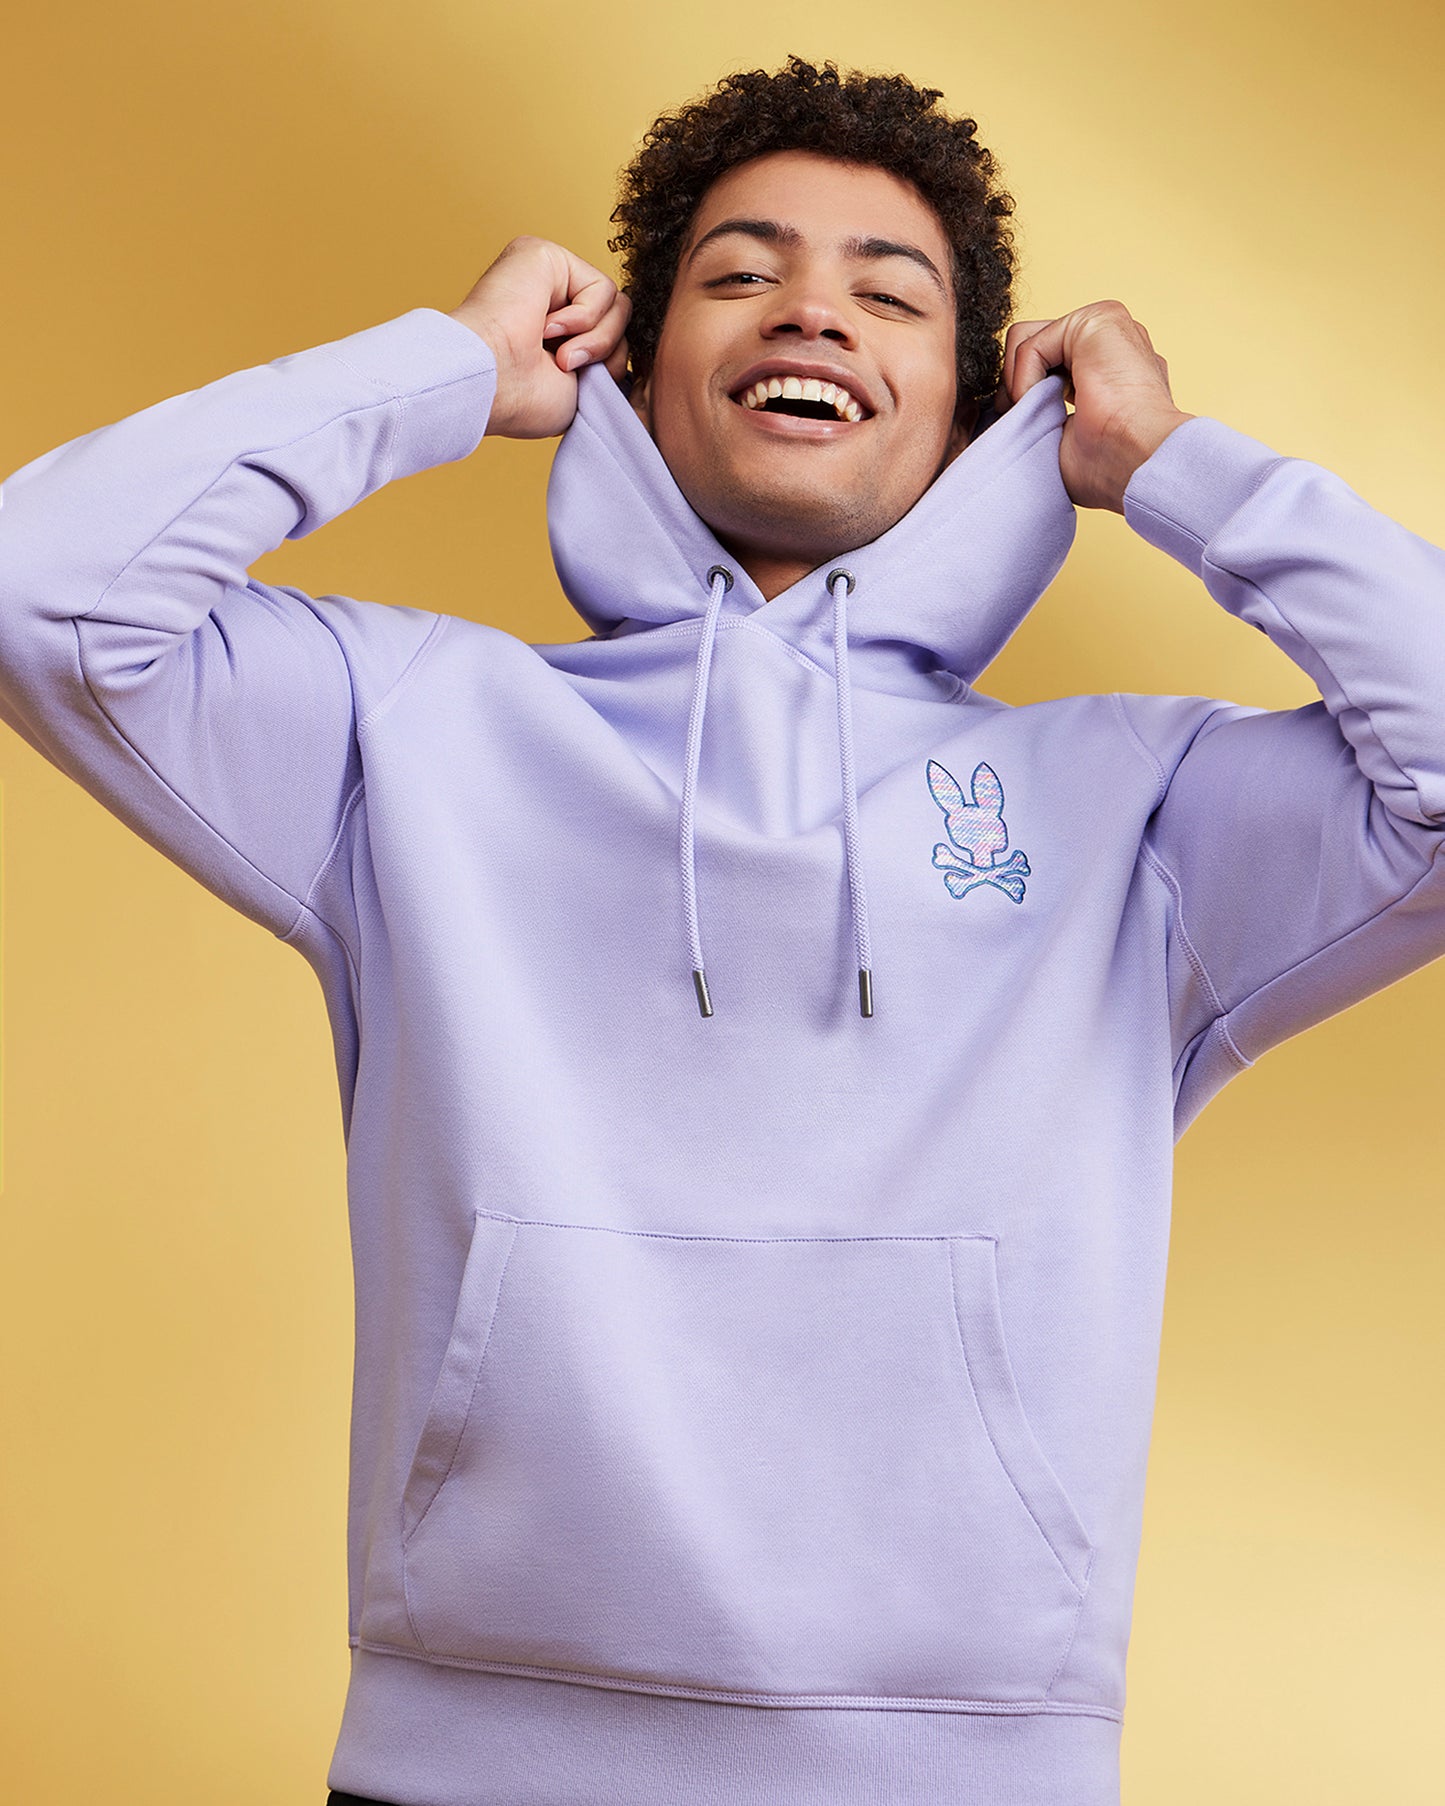 Buy Lavender Aura Sweatshirt & Hoodies for Men by Calvin Klein